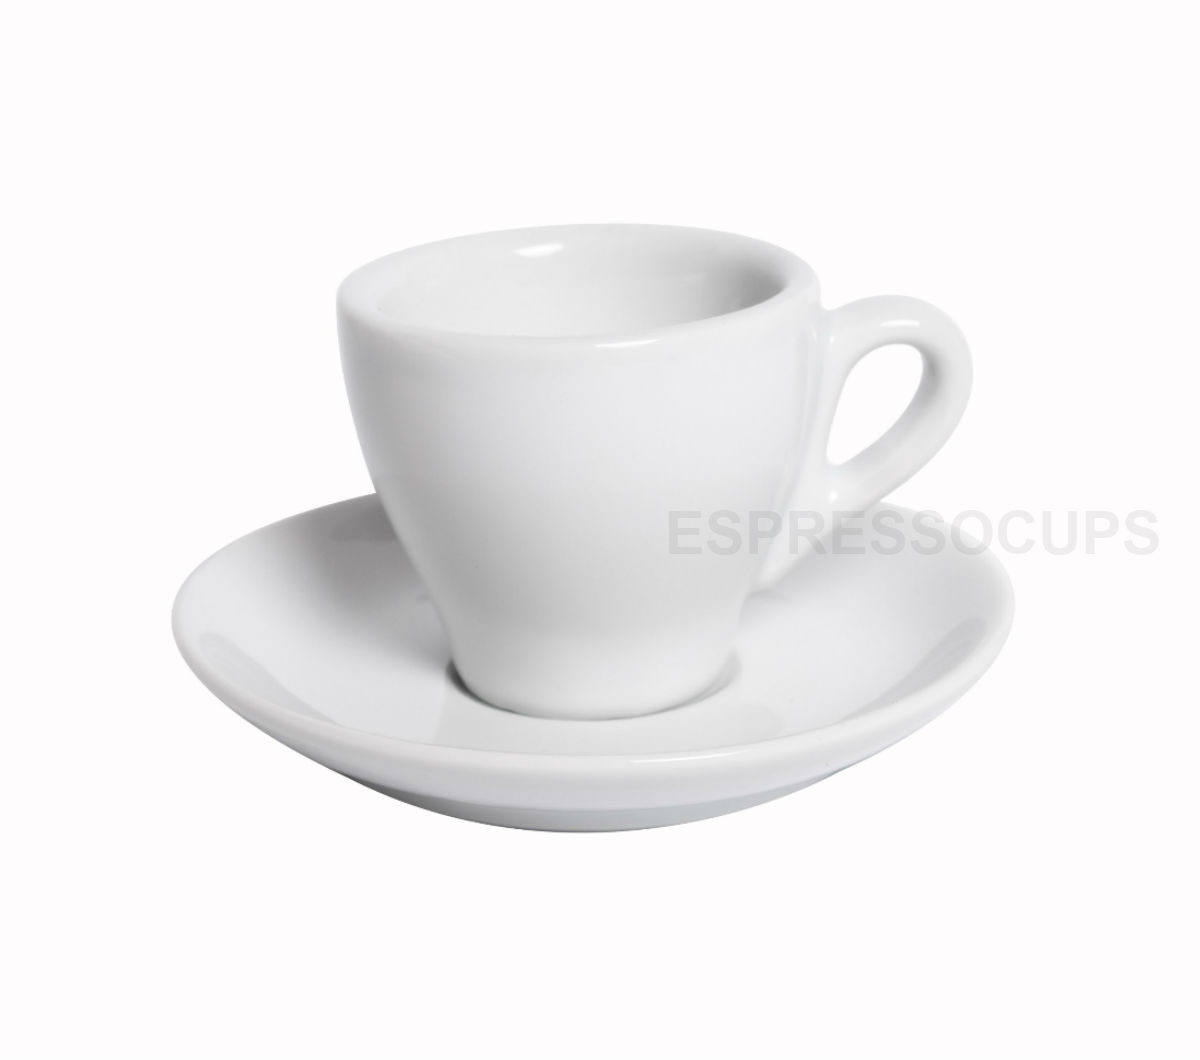 "GENOVA" Espresso Cups 80ml - white